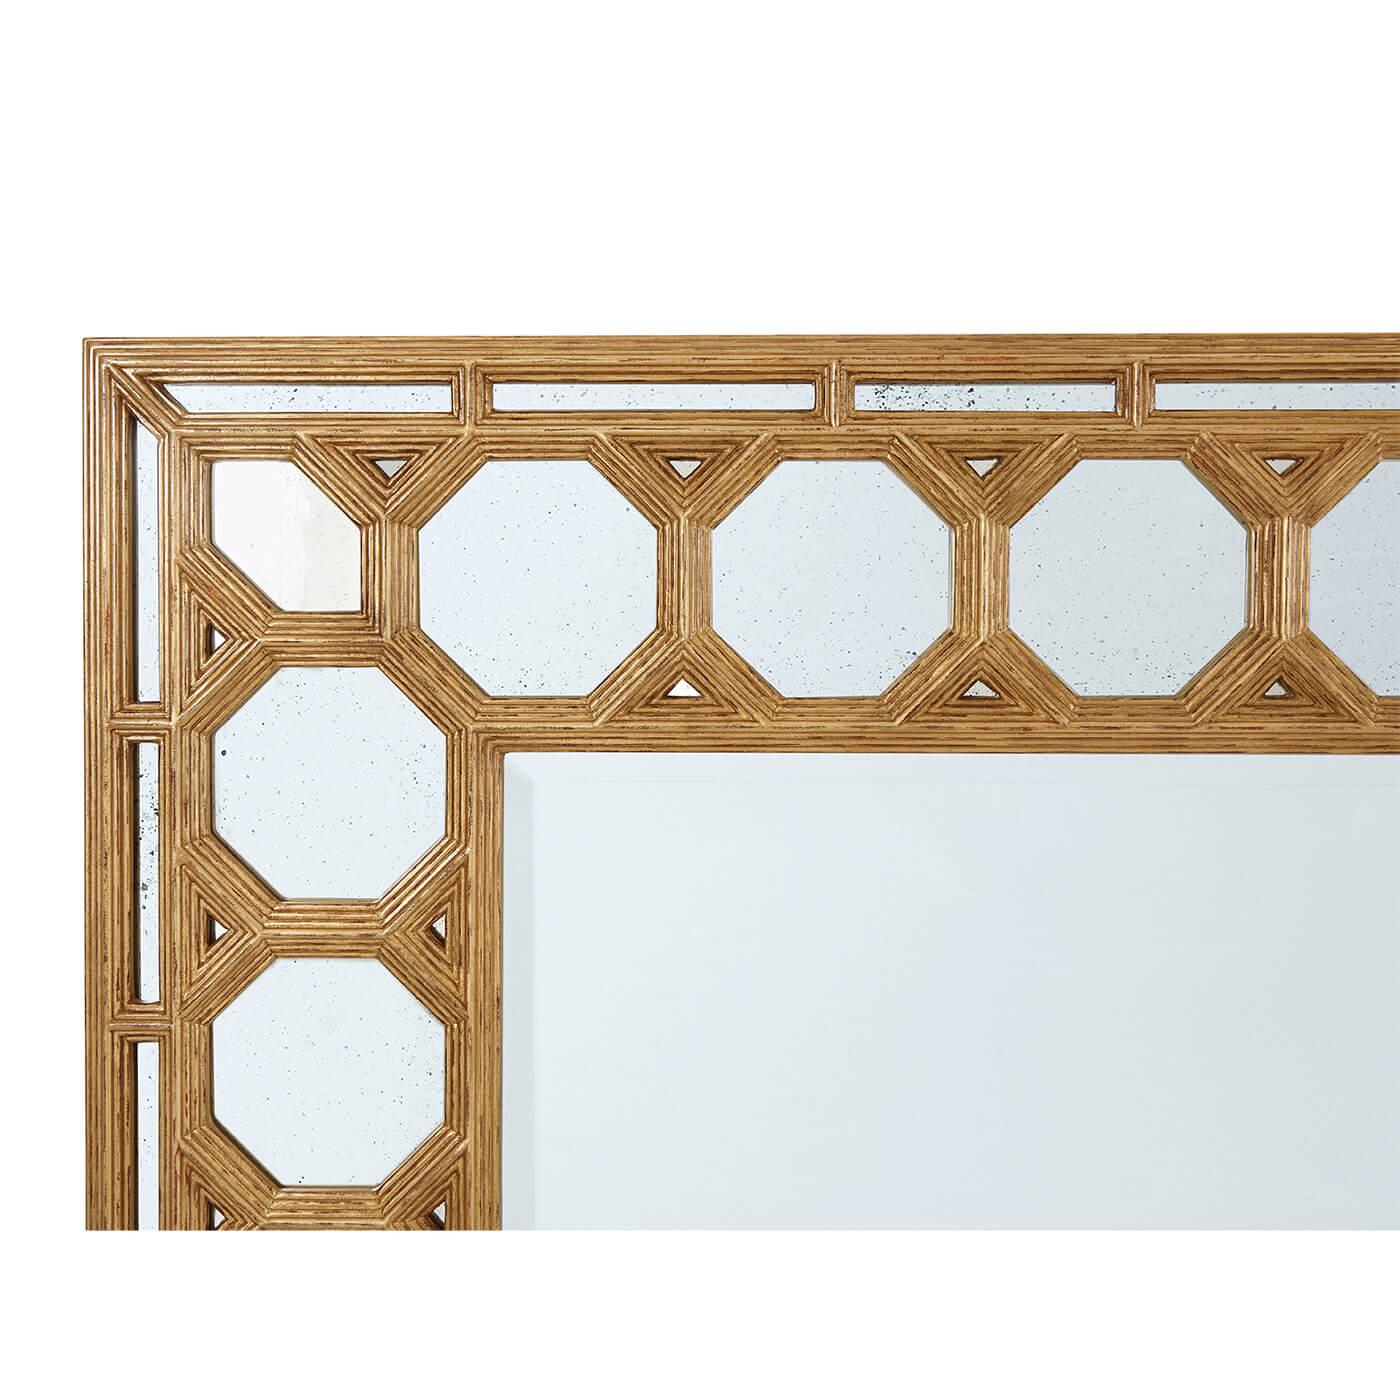 Un miroir doré de style baroque espagnol. Ce centre de miroir antique à bords biseautés est placé dans un cadre de plaques de miroir caissonnées octogonales consécutives. L'optique est magnifique dans ce miroir décoratif. Peut être suspendu